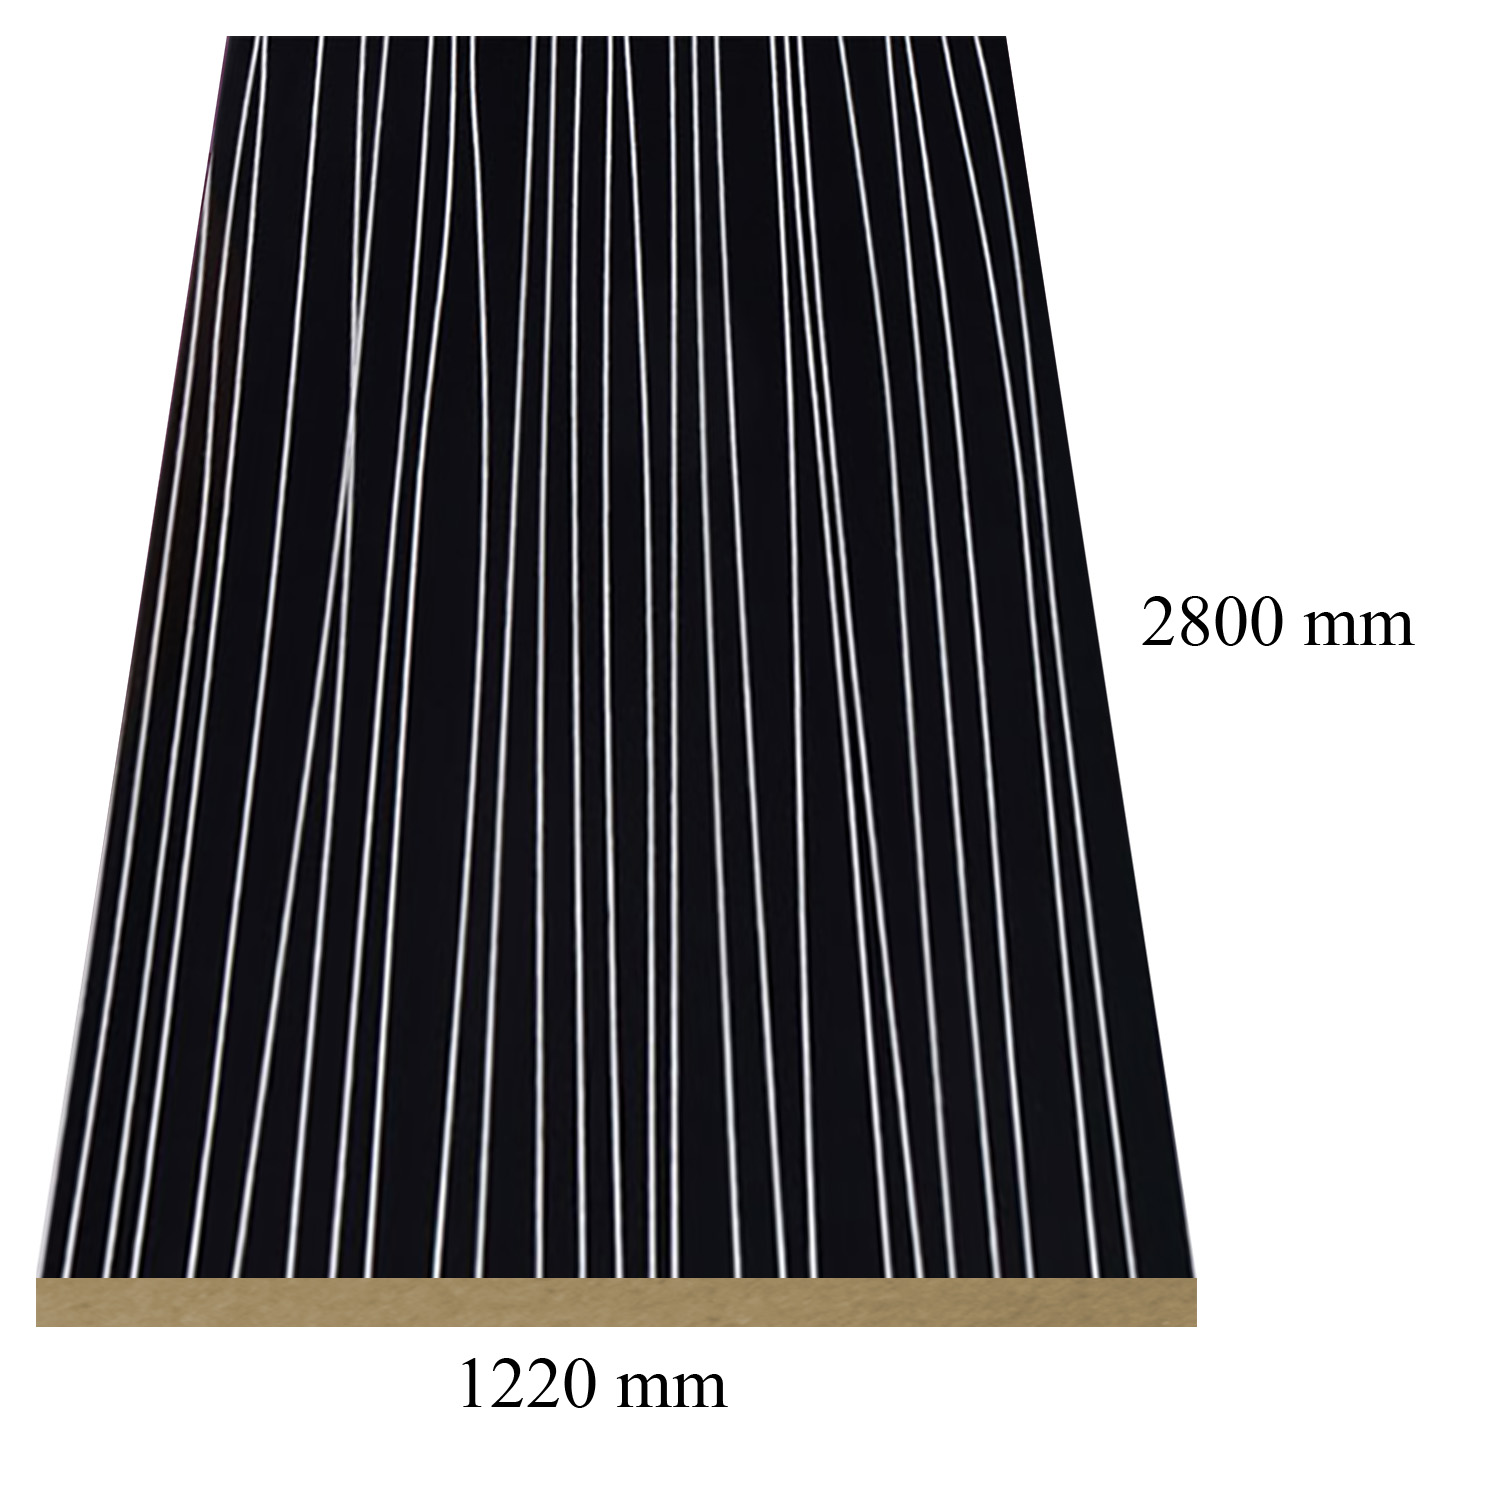 2 — 6150 Stripe Black high gloss - PVC coated 18 mm MDF